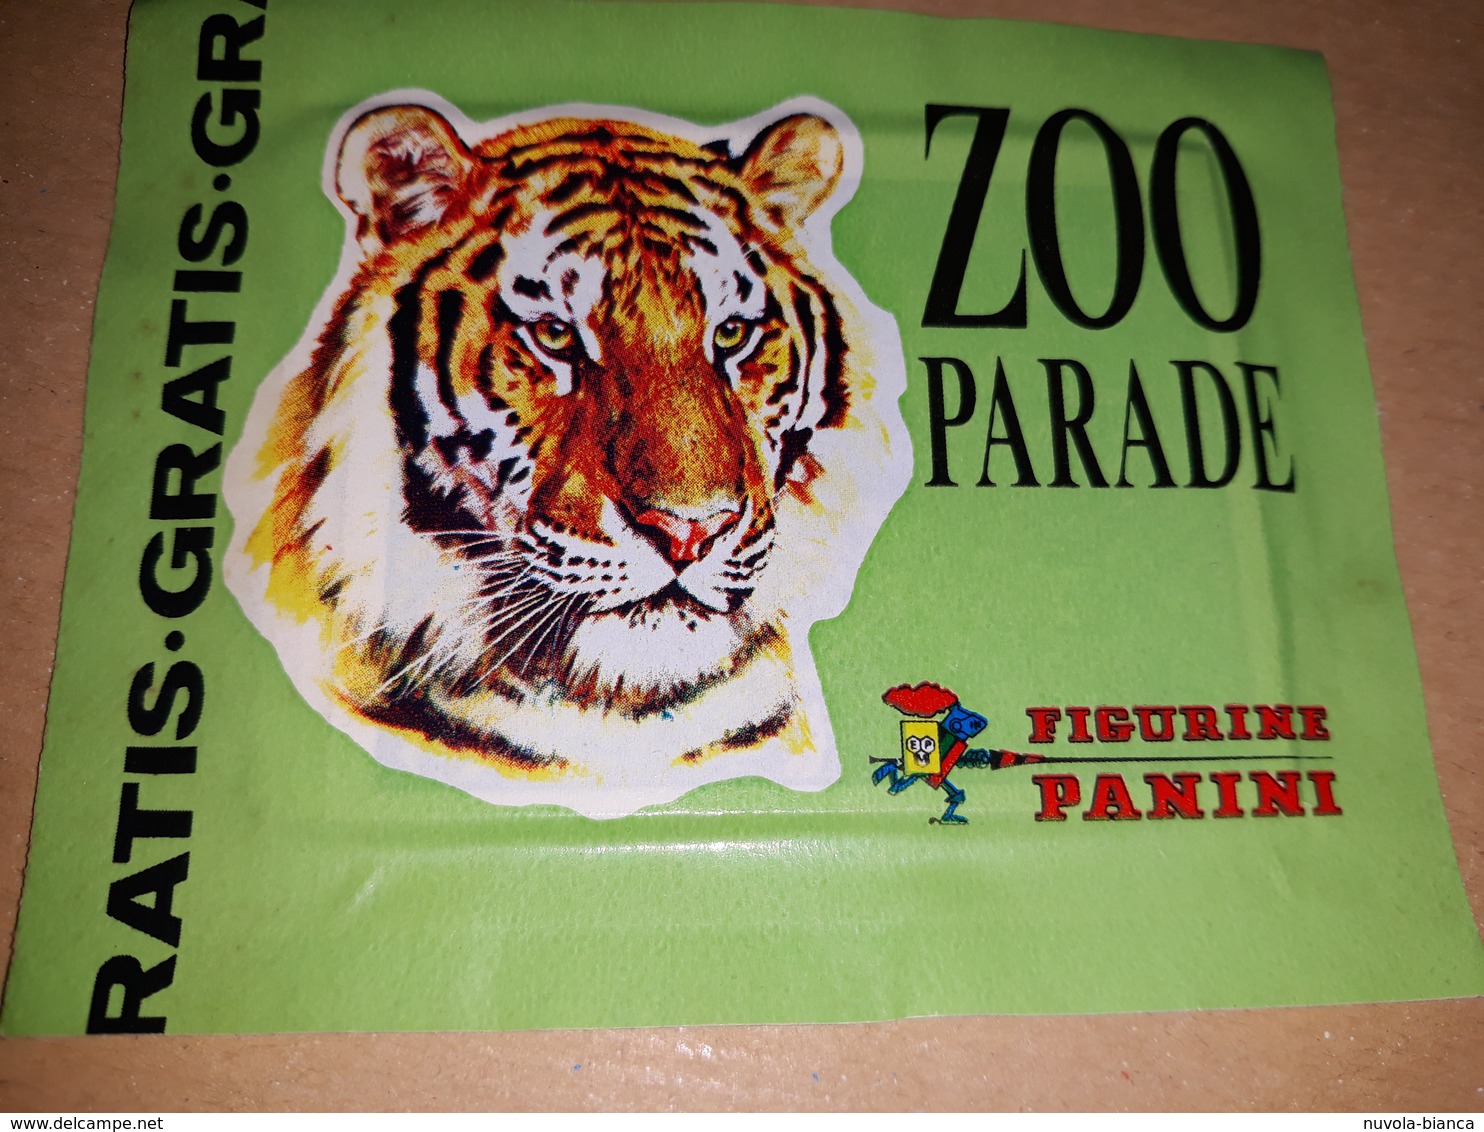 Zoo Parade Bustina Con Figurine Panini.tigre Edizione Gratis - Edizione Italiana